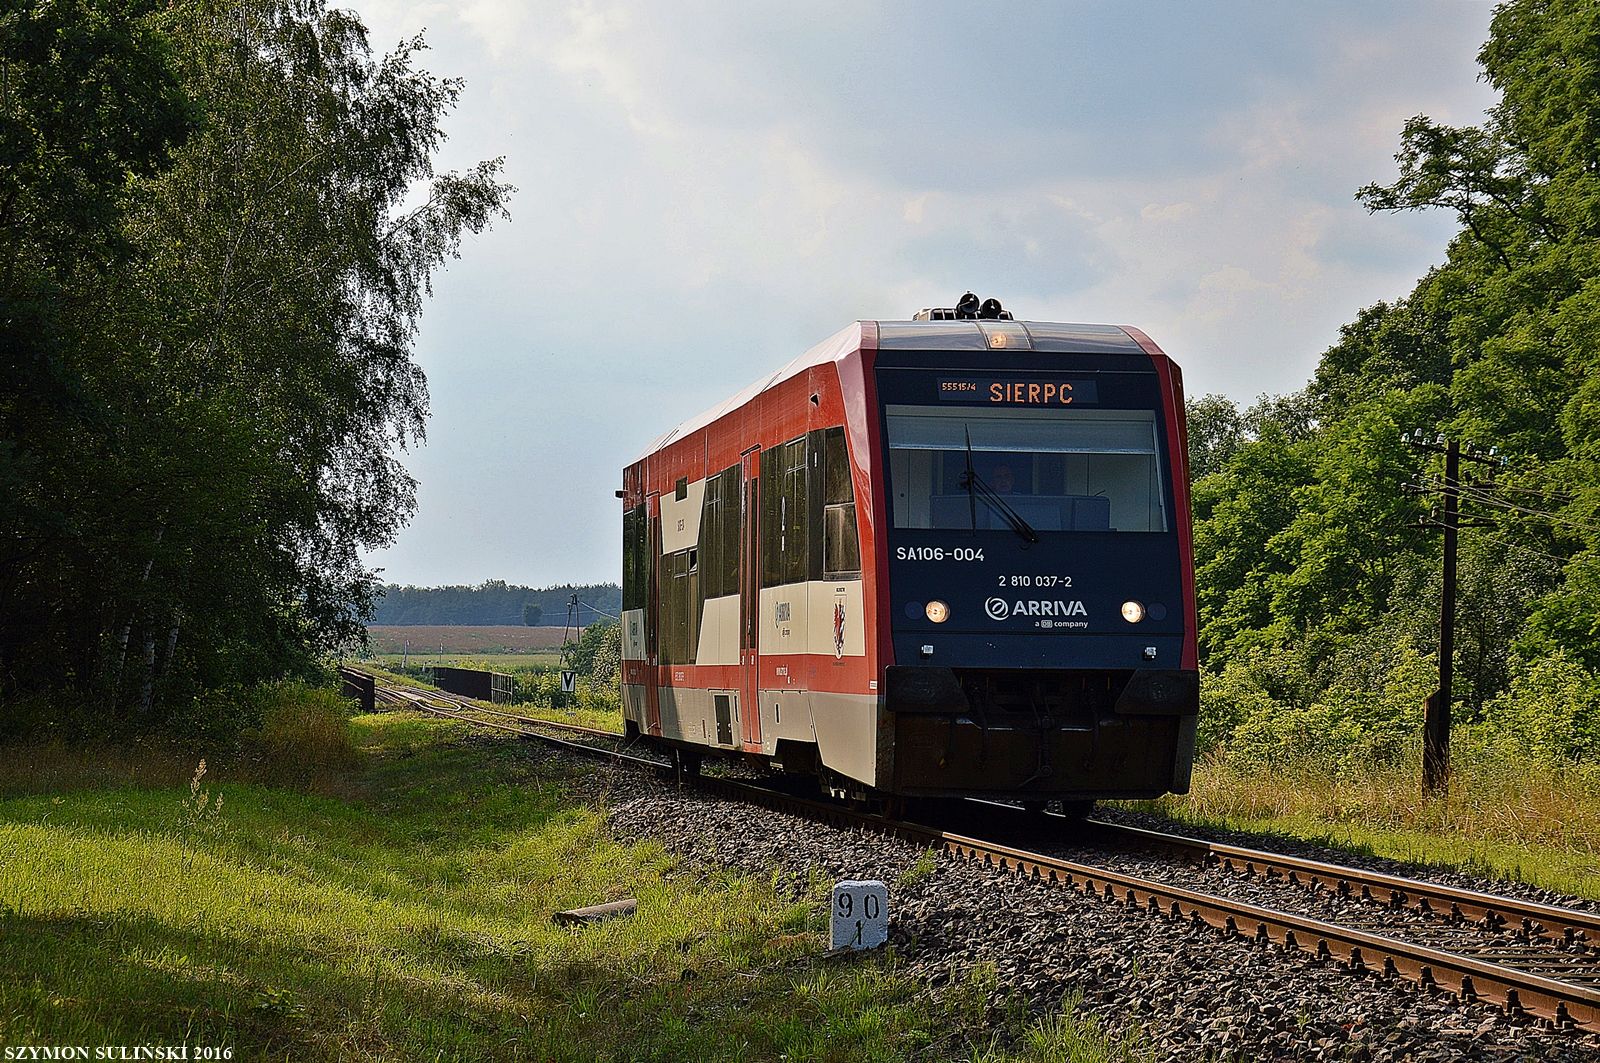 Szynobus SA106-004 pracujący dla spółki Arriva RP zbliża się do stacji Sierpc, pociąg osobowy 55514 relacji Toruń Główny-Sierpc, fot. z dnia 13 lipca 2016 r.